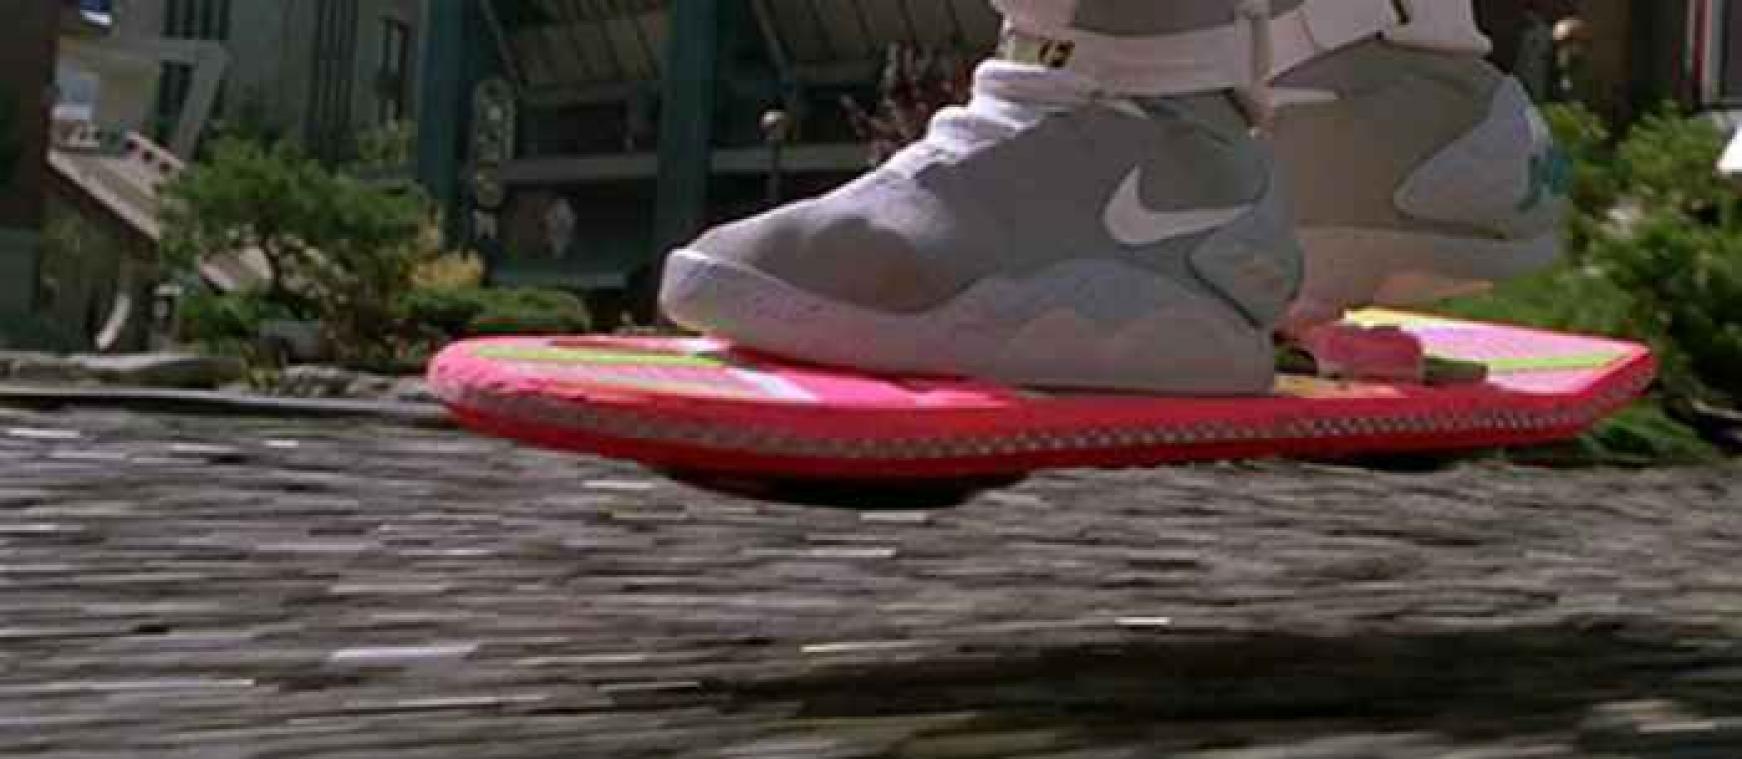 Retour vers le futur: Le hoverboard de Marty McFly aux enchères - Metrotime